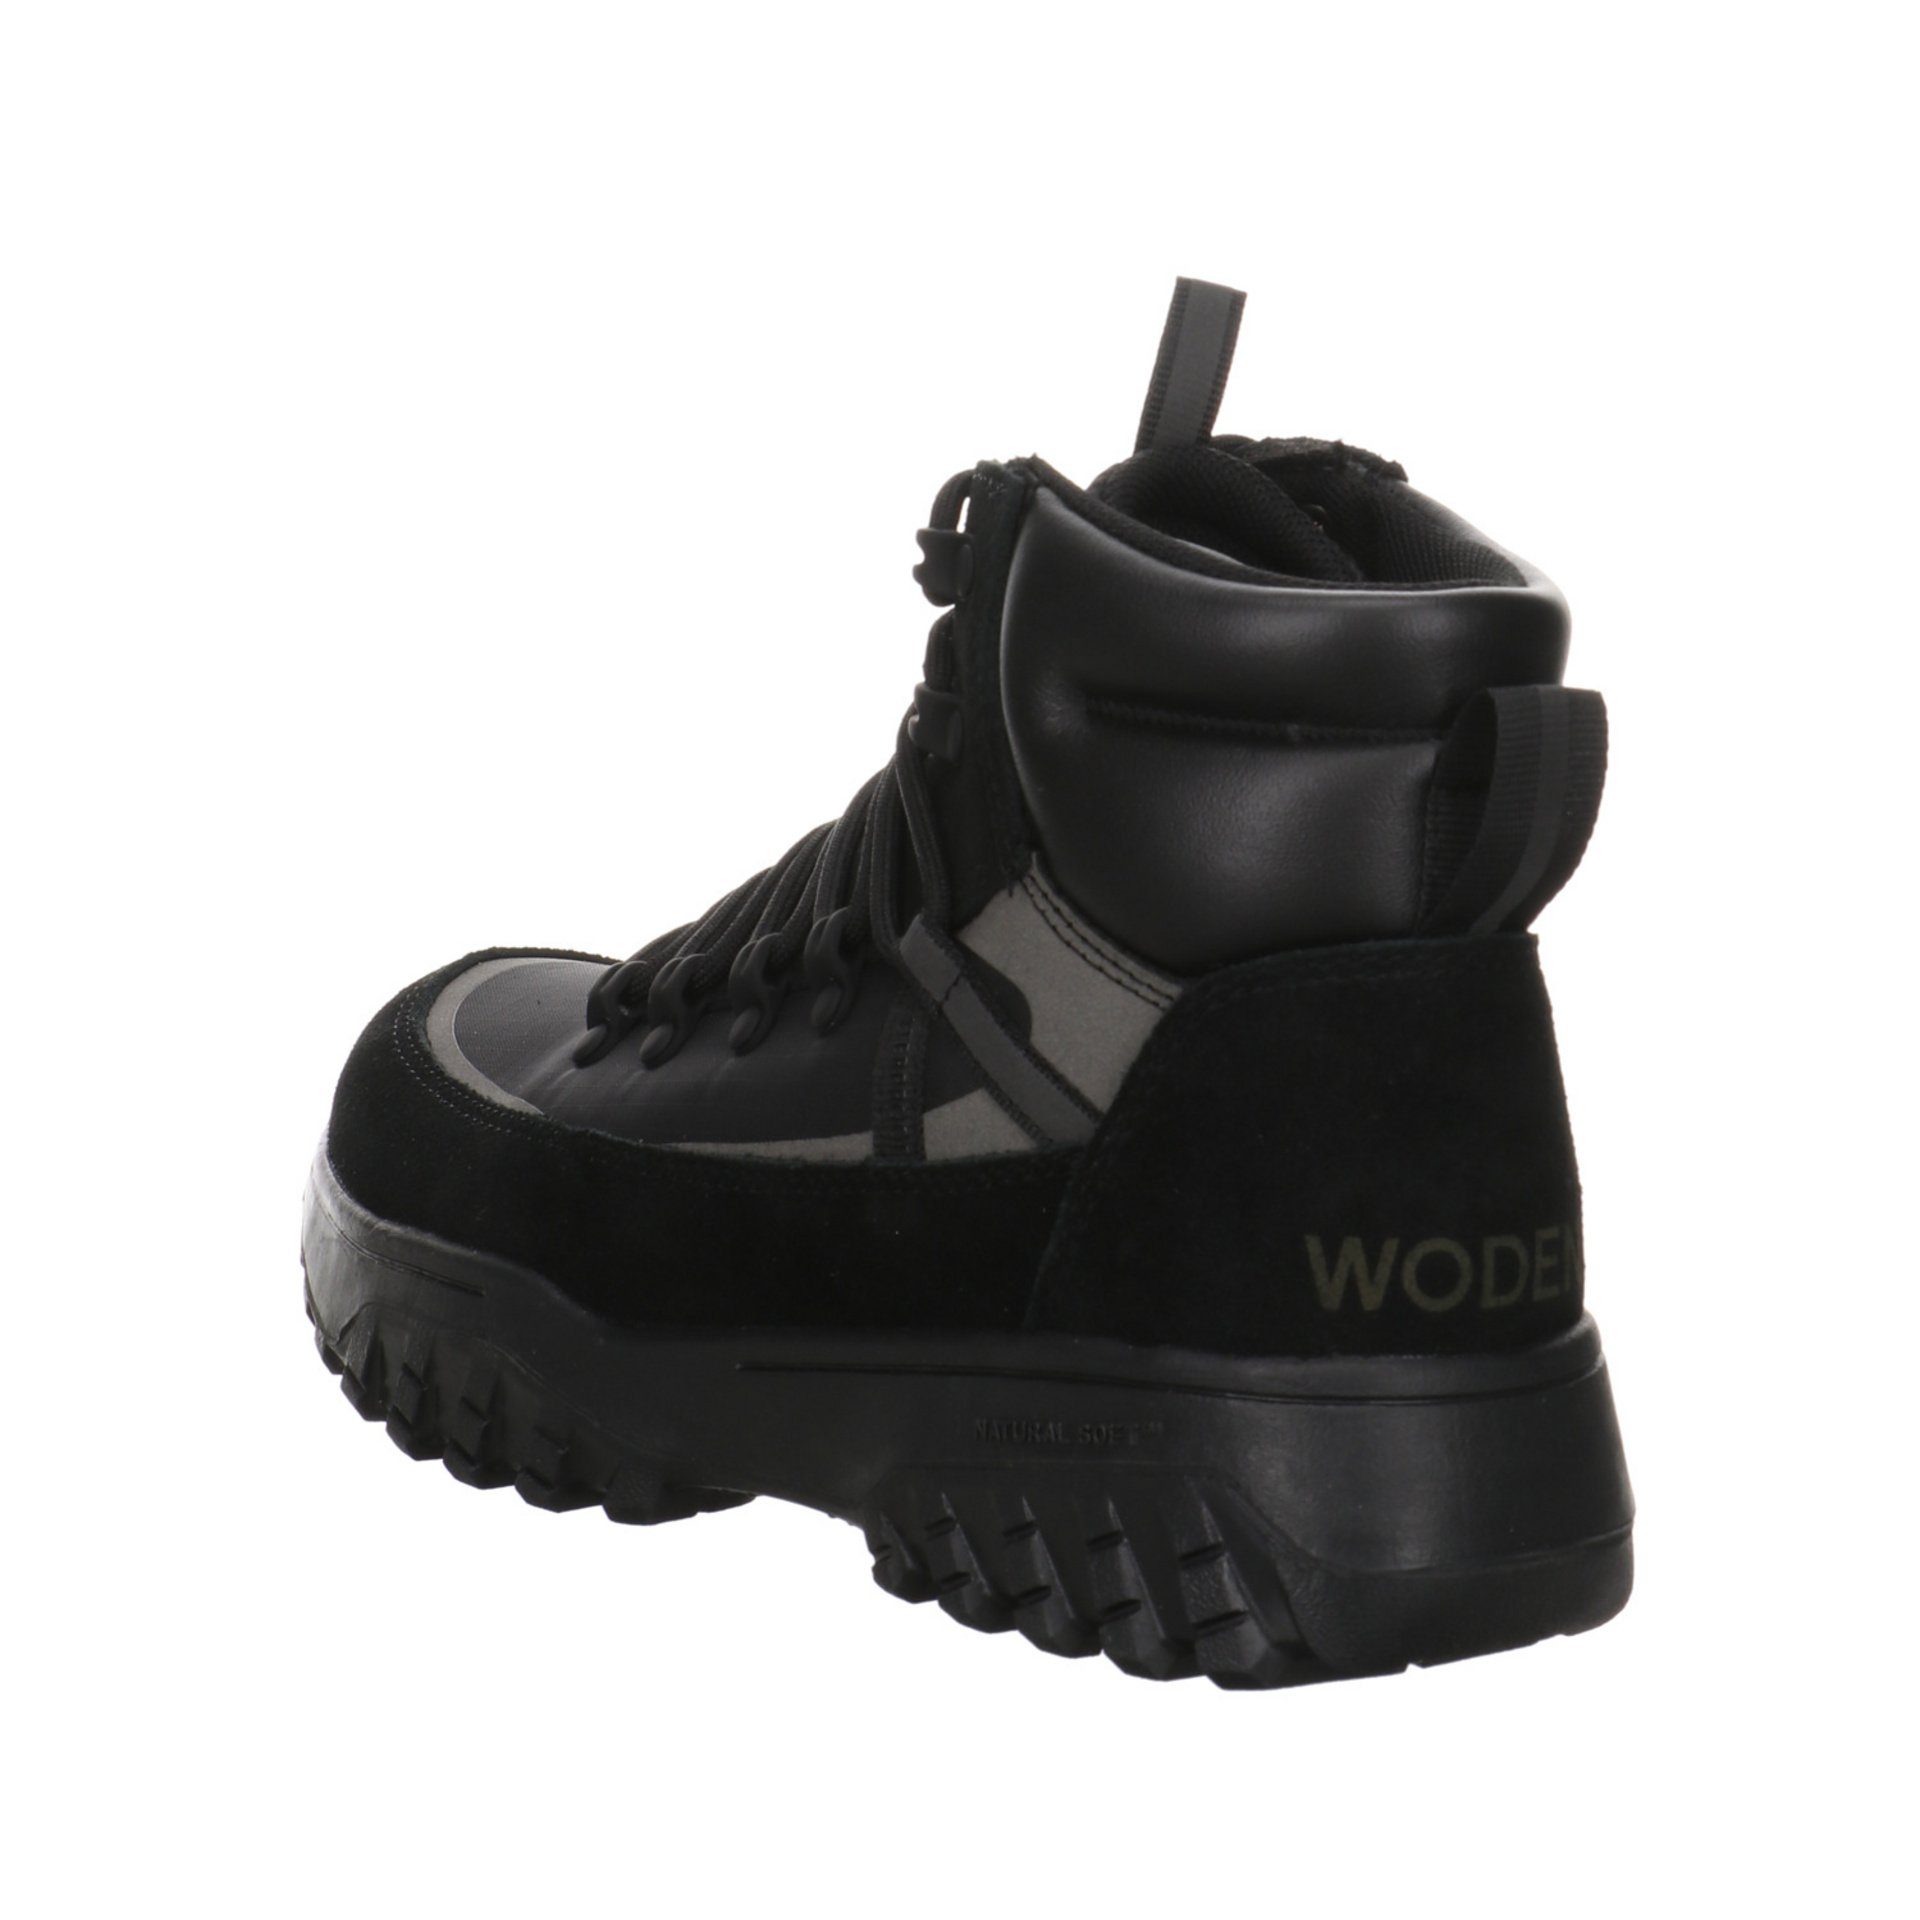 WODEN Stiefeletten Schnürstiefelette Tessa Boots Damen black Leder-/Textilkombination Schuhe